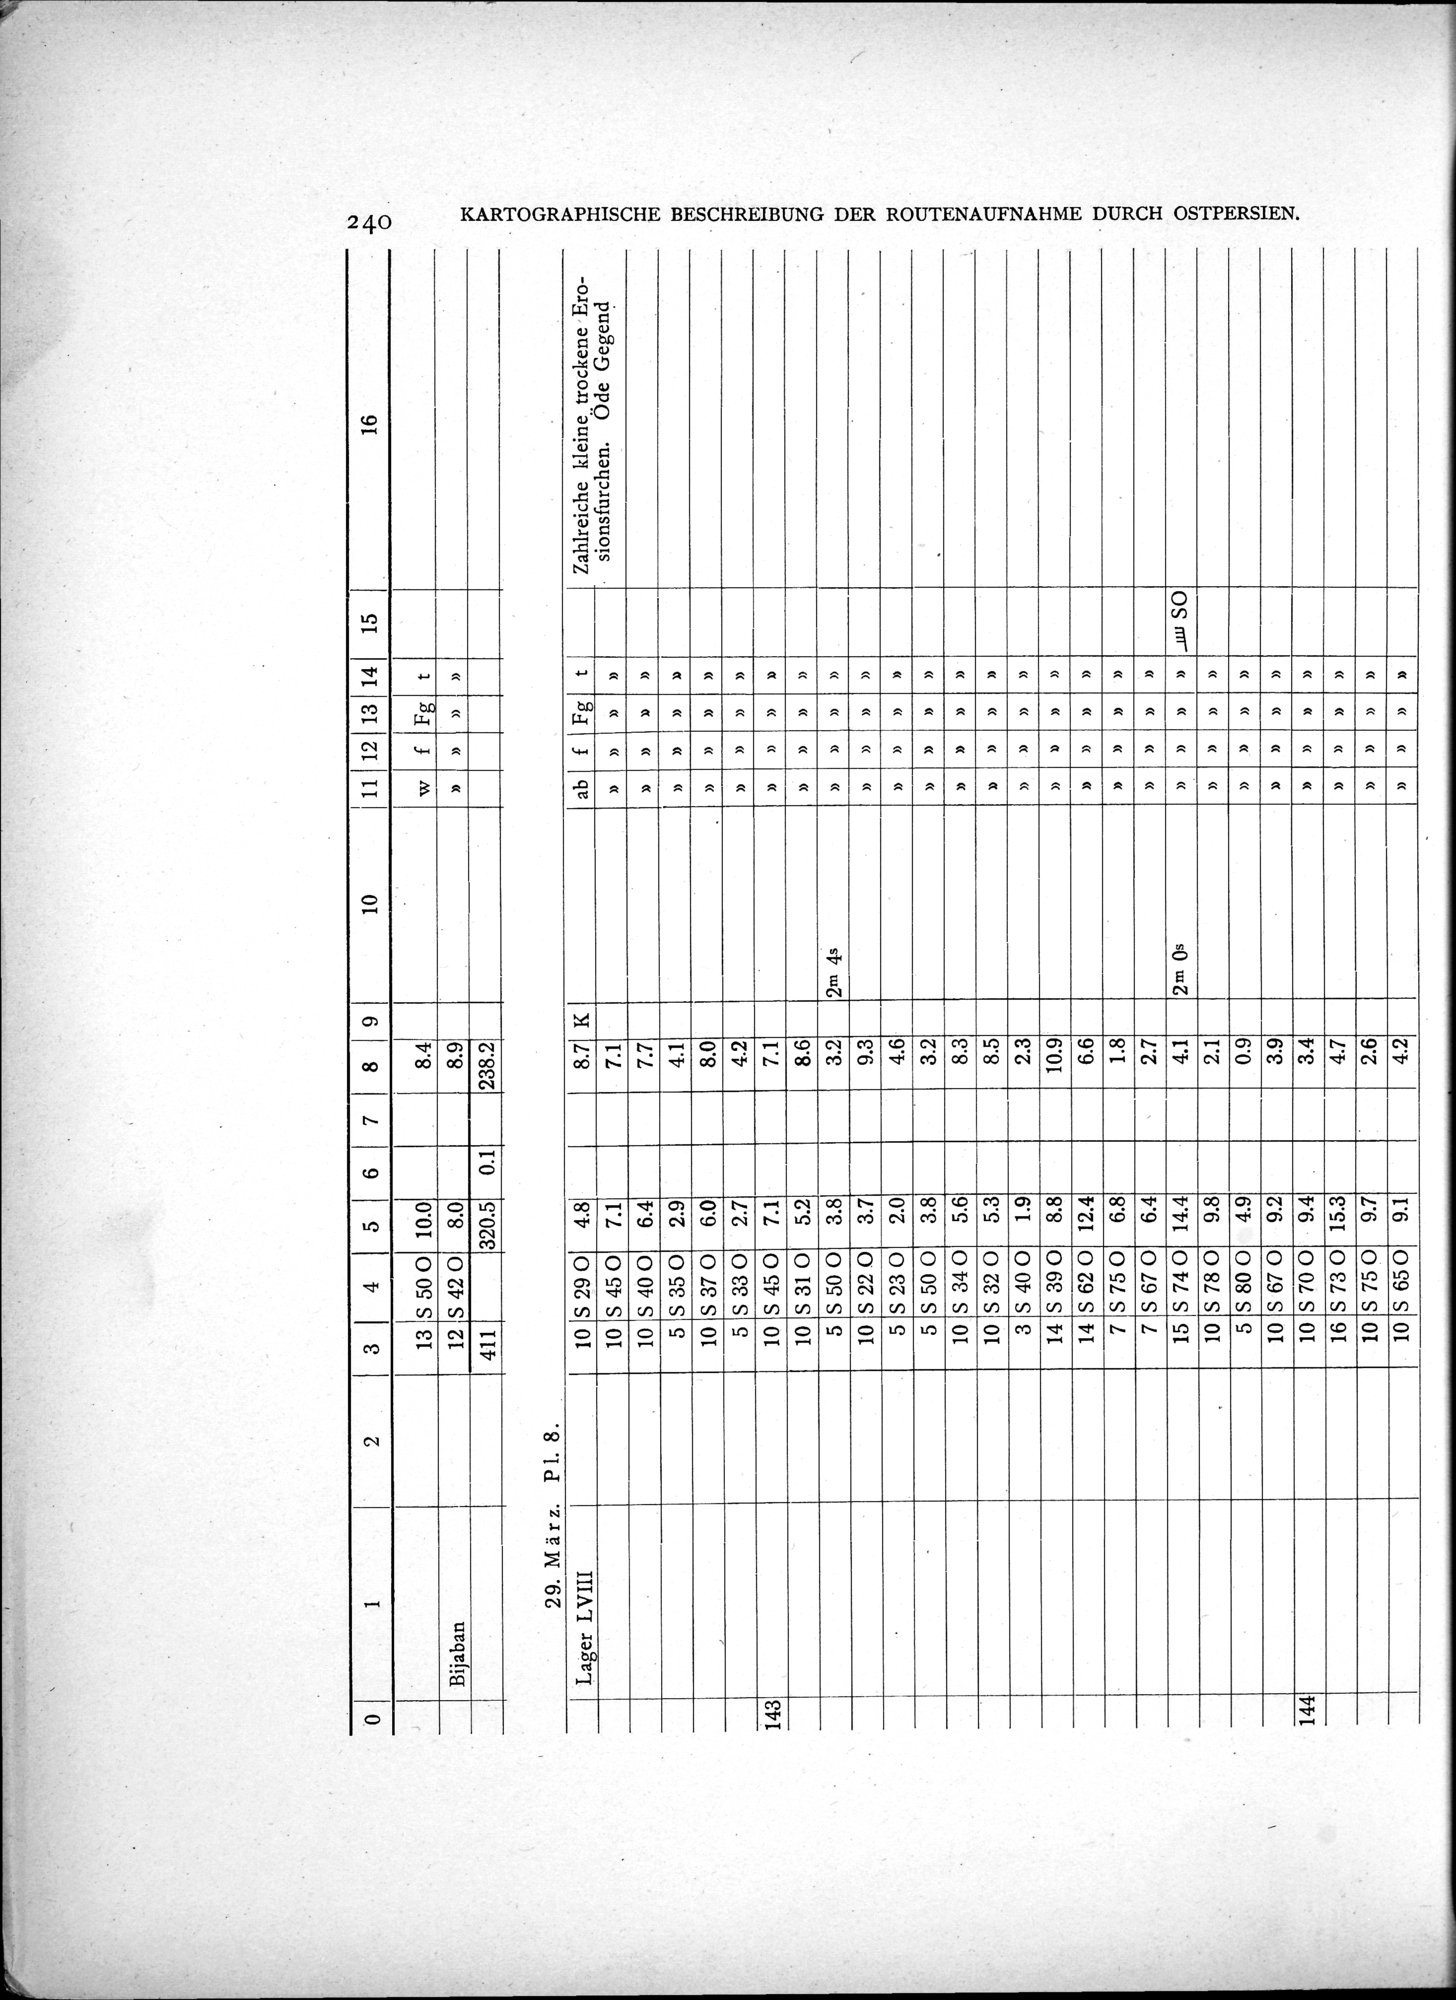 Eine Routenaufnahme durch Ostpersien : vol.2 / Page 310 (Grayscale High Resolution Image)